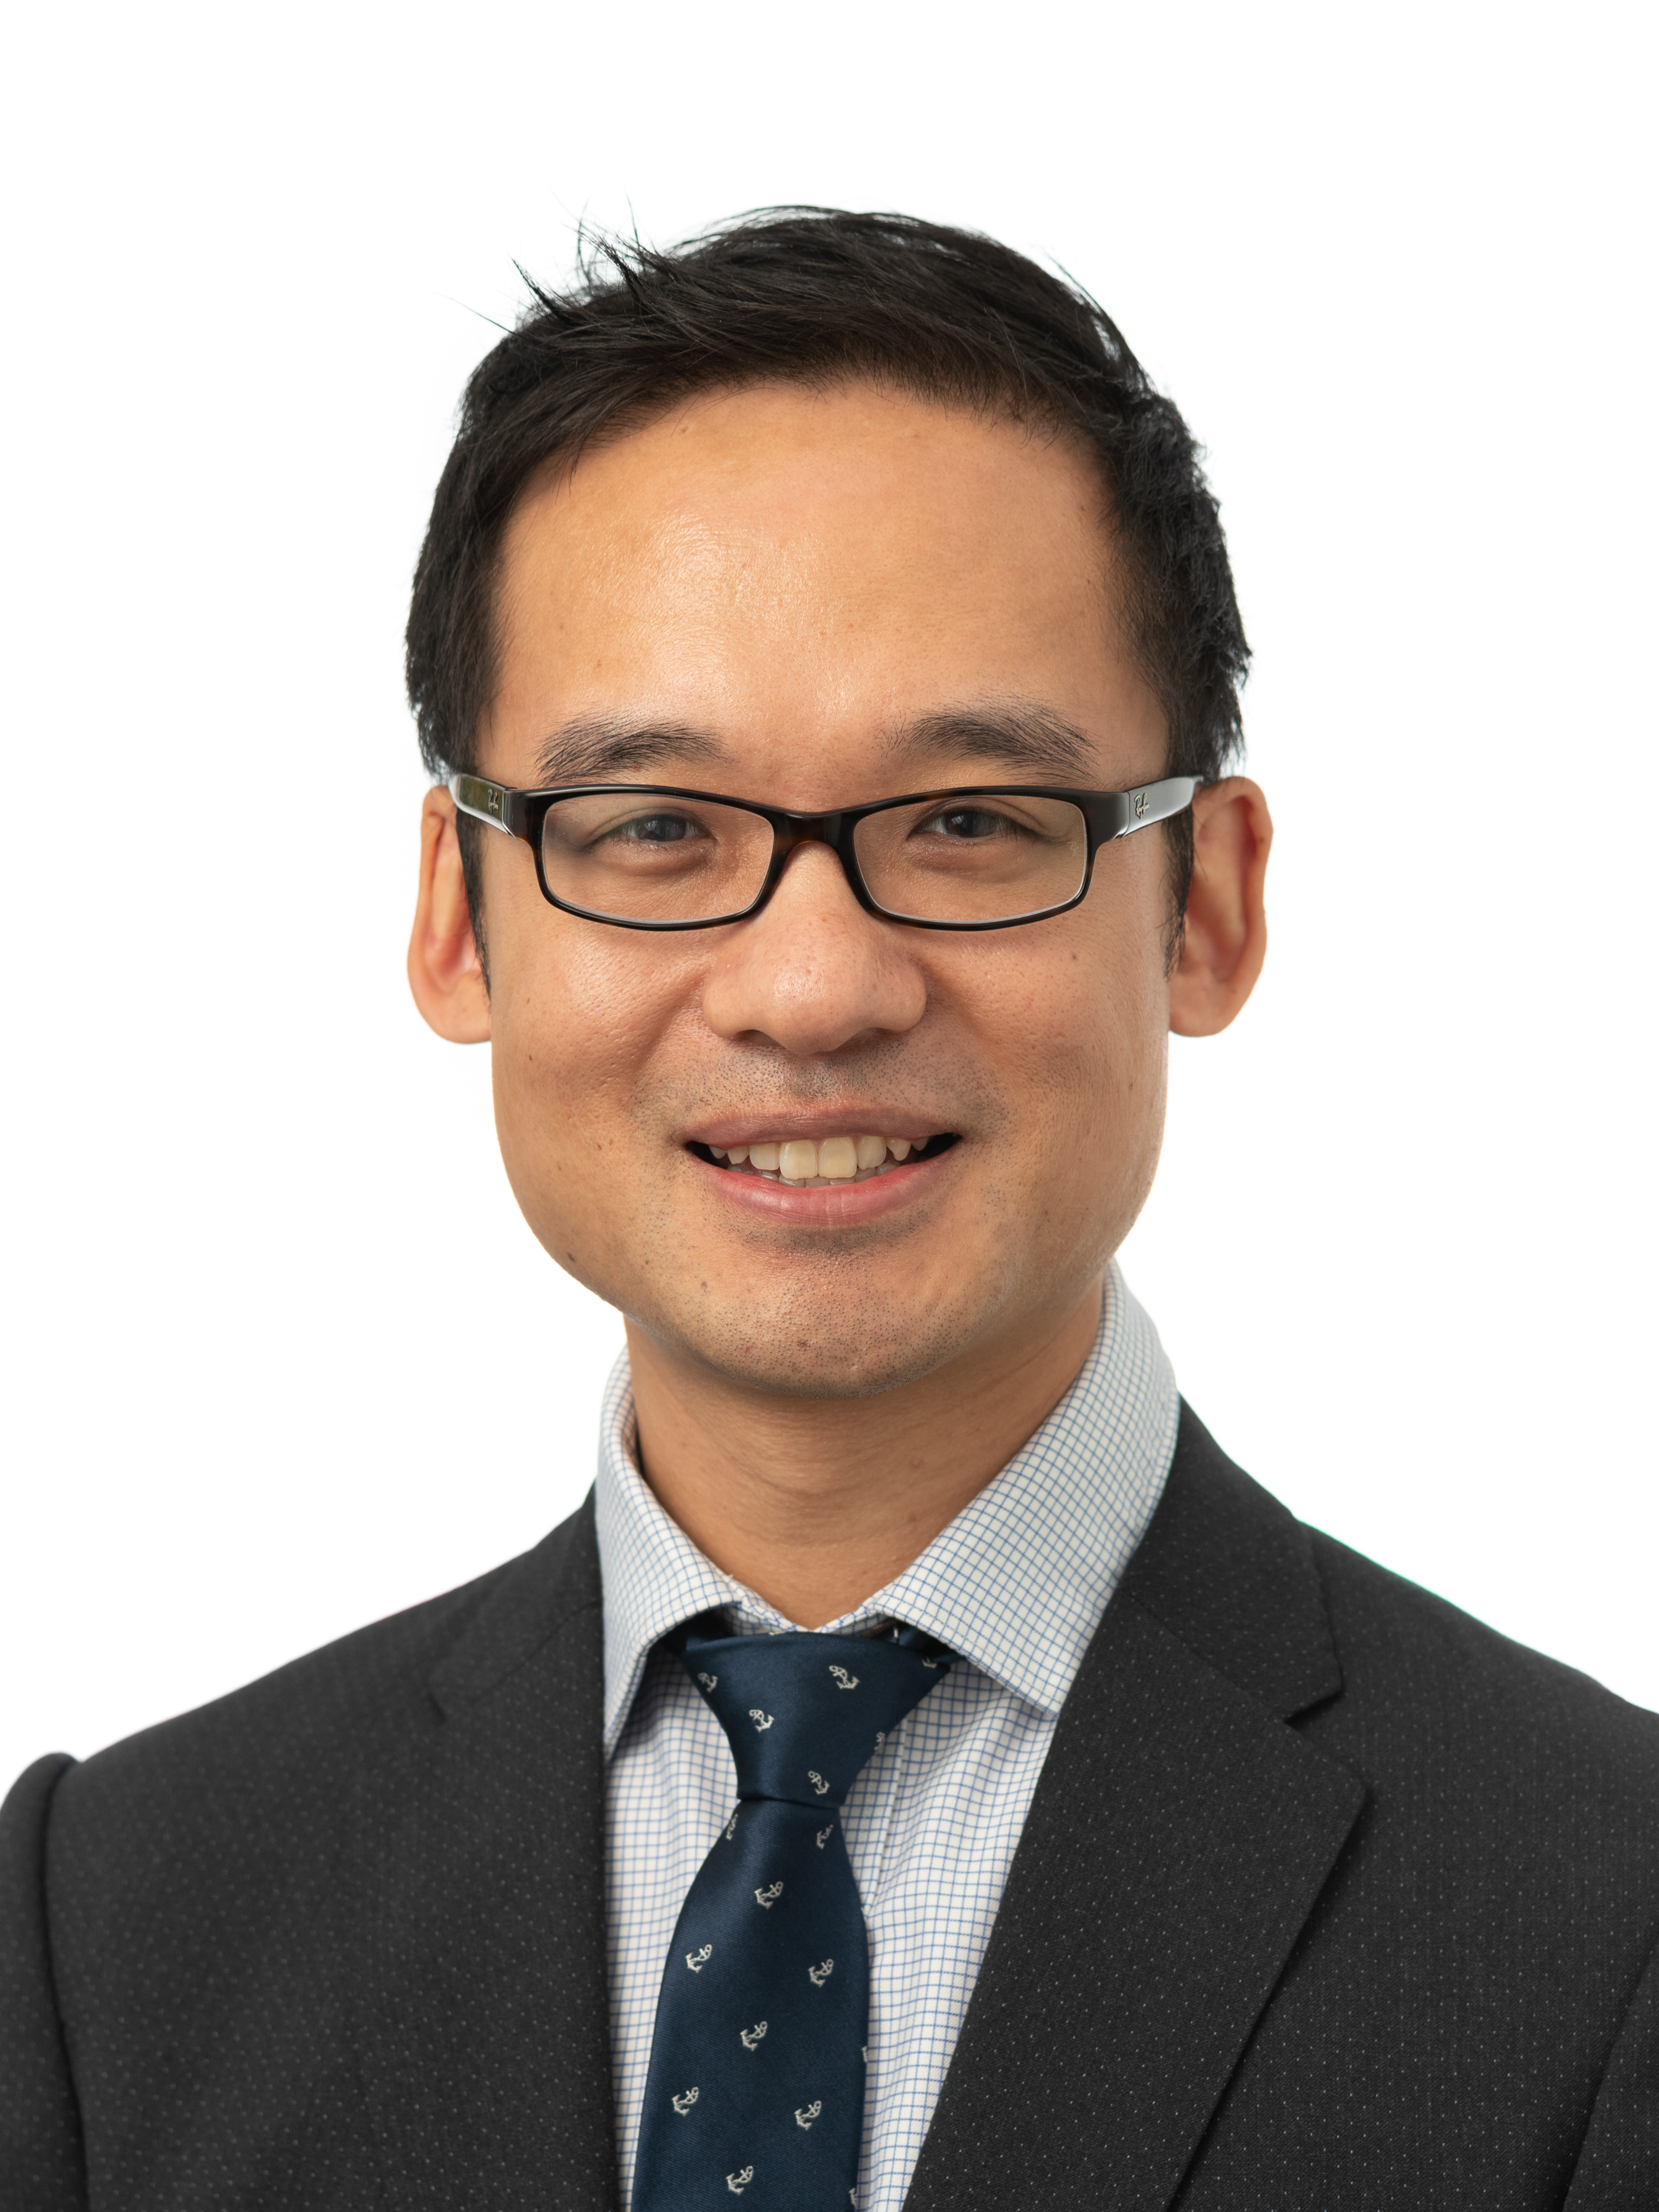 Mr Yuan Cheng profile image